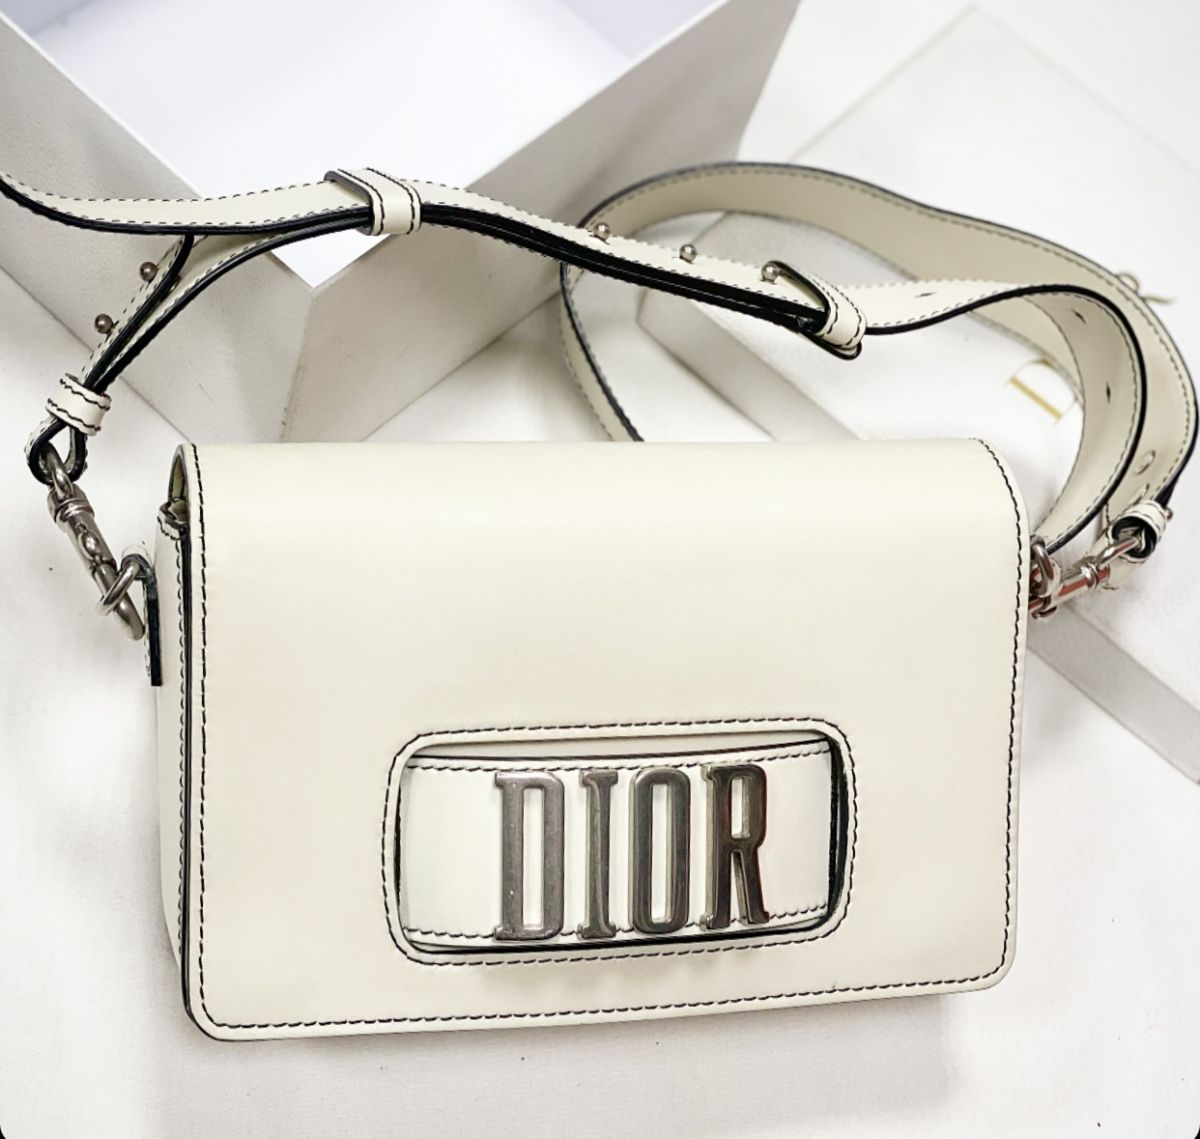 Сумка Christian Dior размер 25/15 цена 107 693 руб 